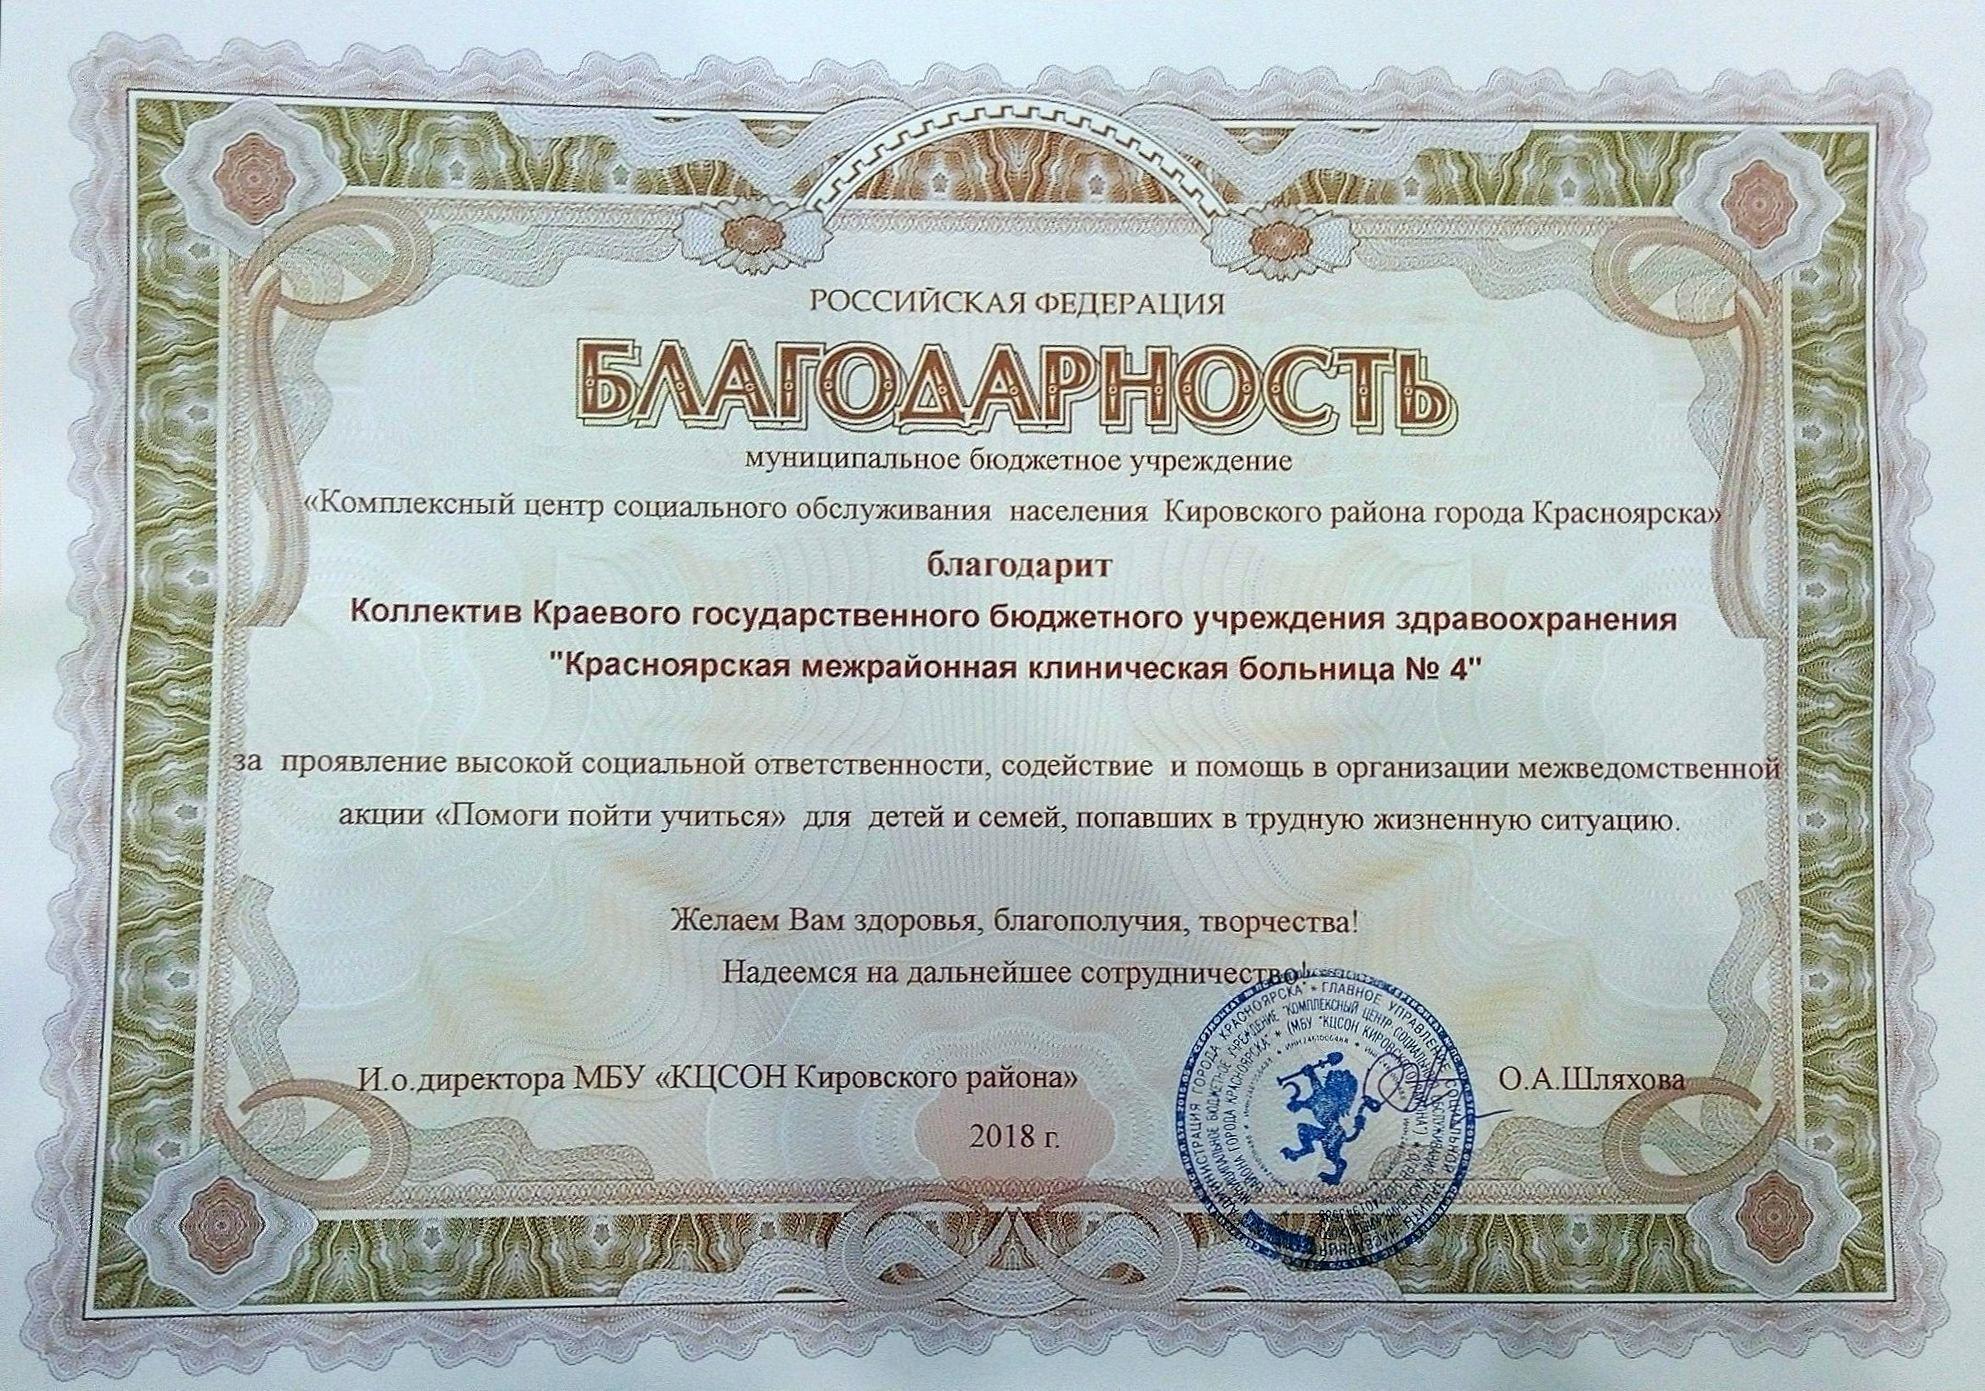 Высокая социальная ответственность Красноярской межрайонной клинической больницы №4 отмечена благодарностями  